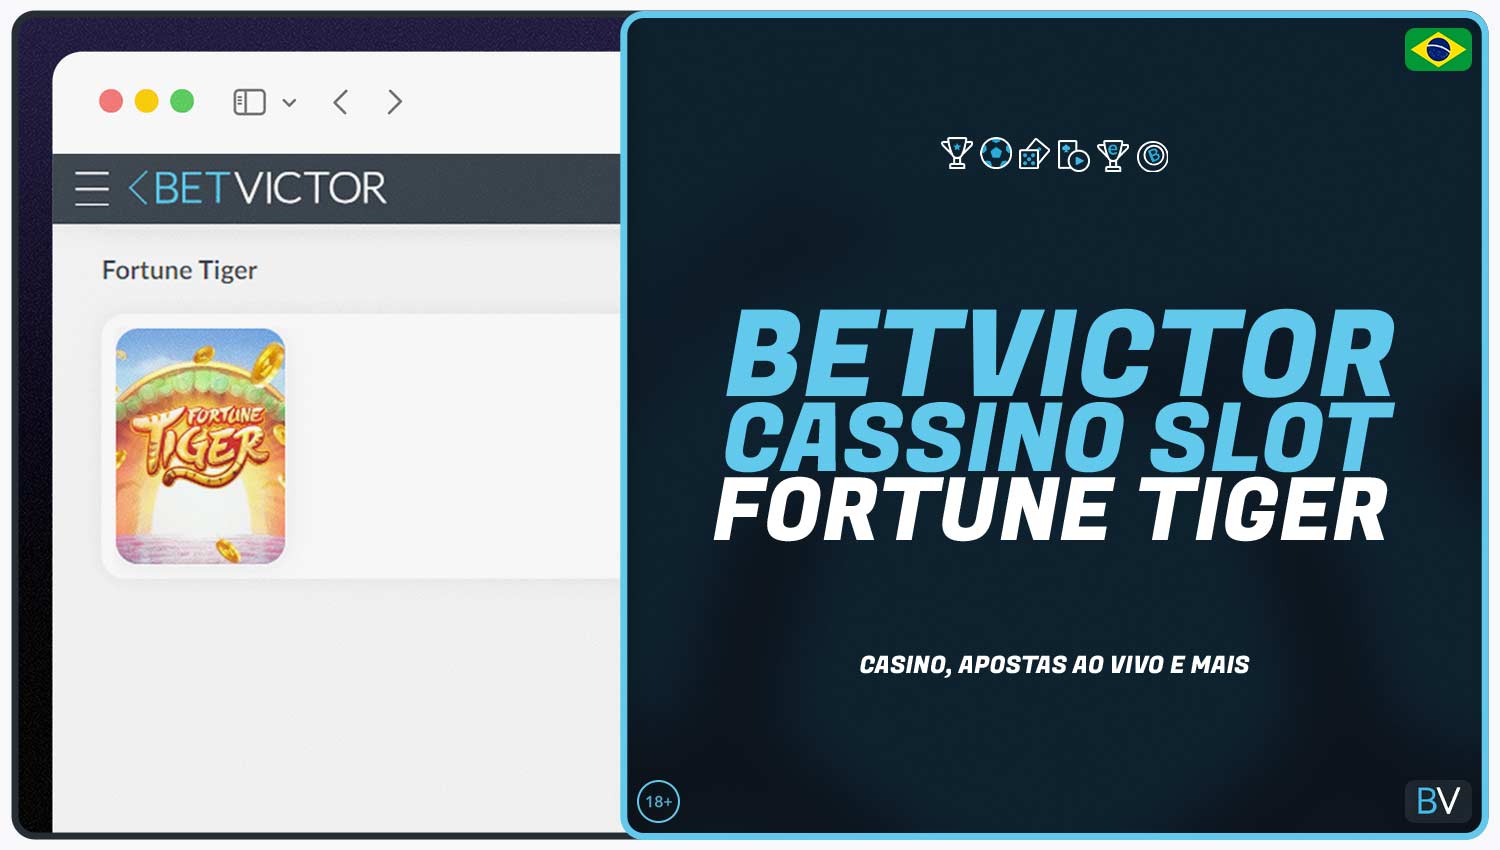 Betvictor - o melhor site de cassino para jogar Fortune Tiger.